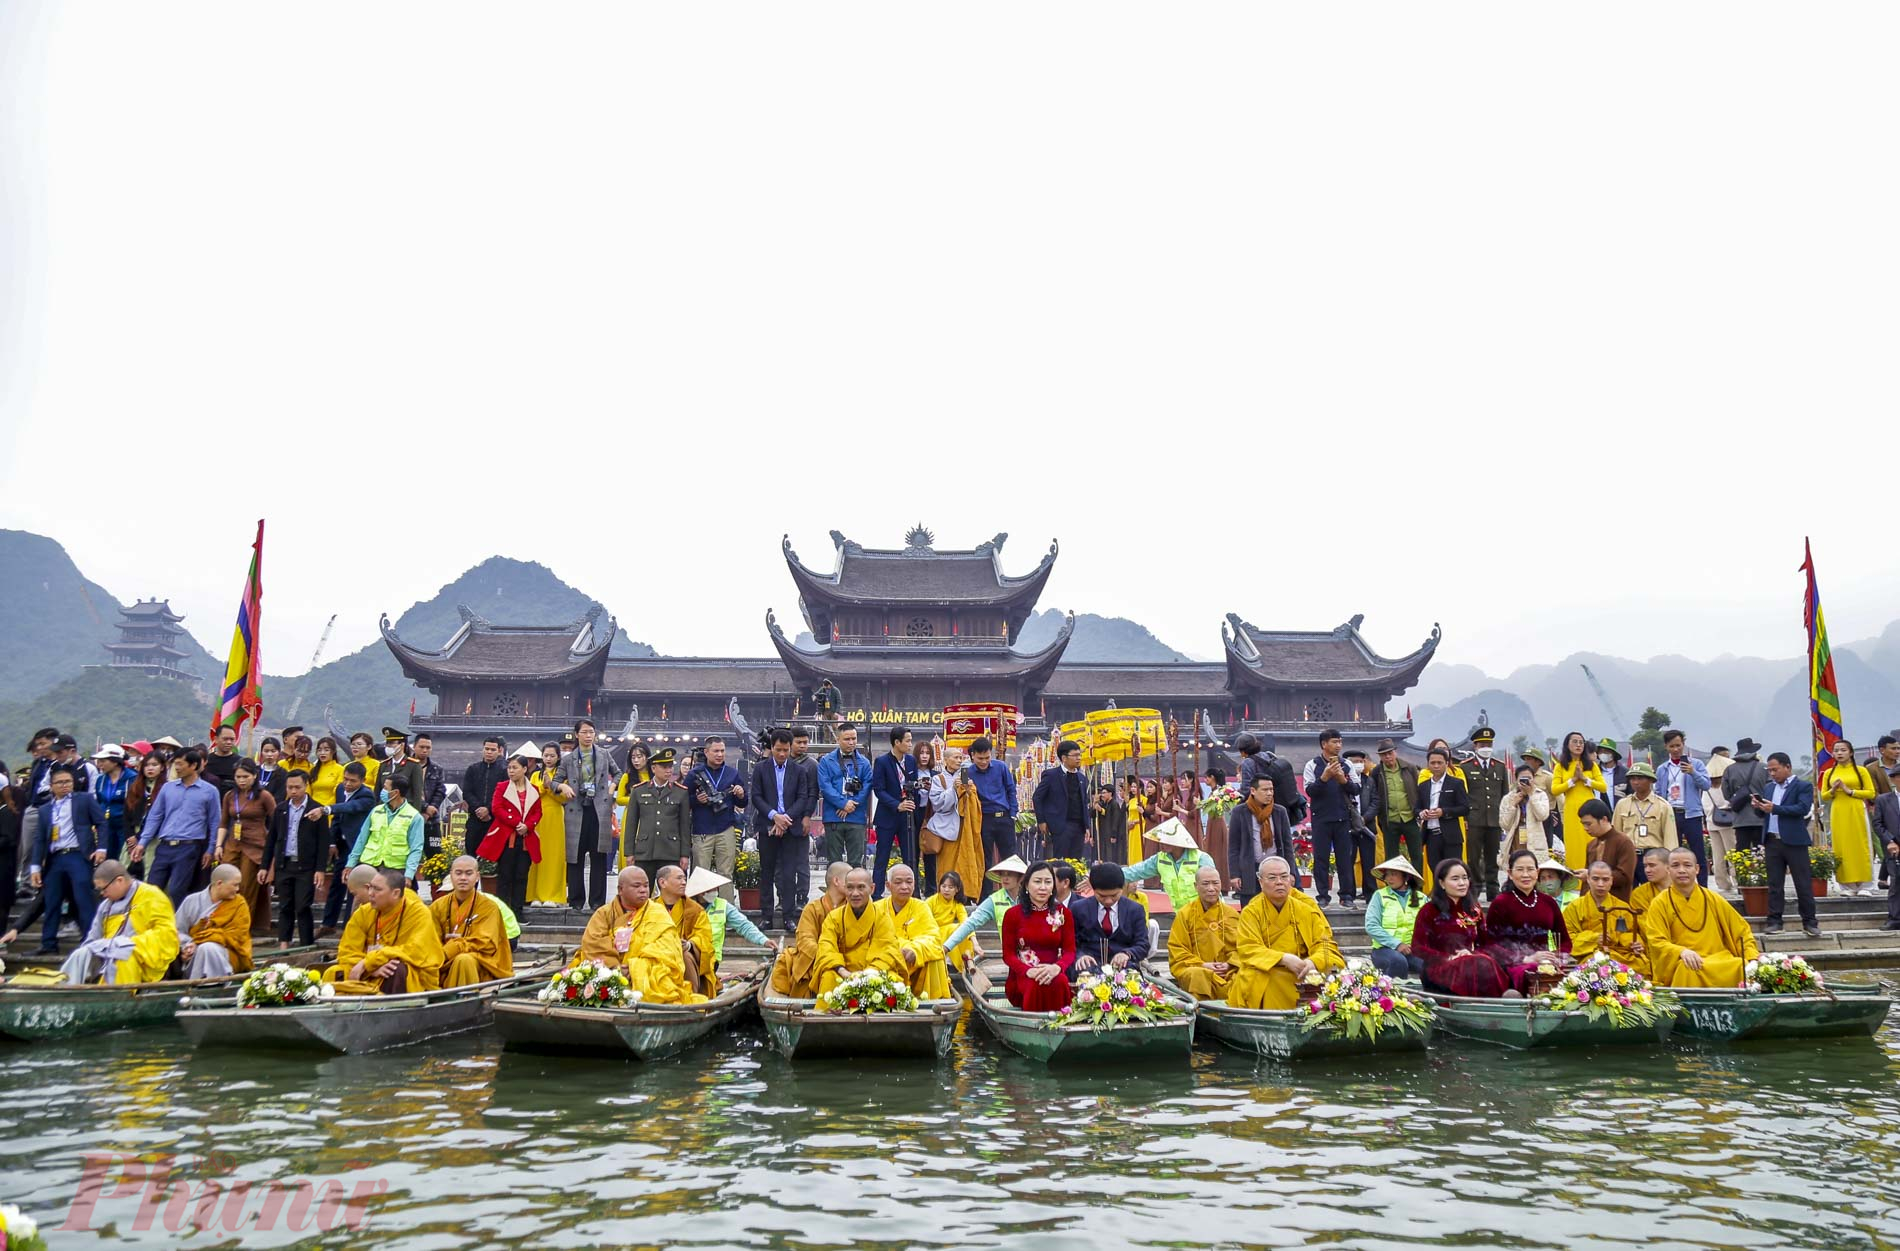 9h30, ngày 2/2, chùa Tam Chúc (thị trấn Ba Sao, huyện Kim Bảng, Hà Nam) tổ chức nghi lễ rước nước linh thiêng khai màn lễ hội. Đoàn rước gồm vài chục thuyền, trong đó có hai thuyền rồng đi đầu tiến thẳng tới vị trí cắm cây nêu giữa hồ, gần đình Tam Chúc cổ.